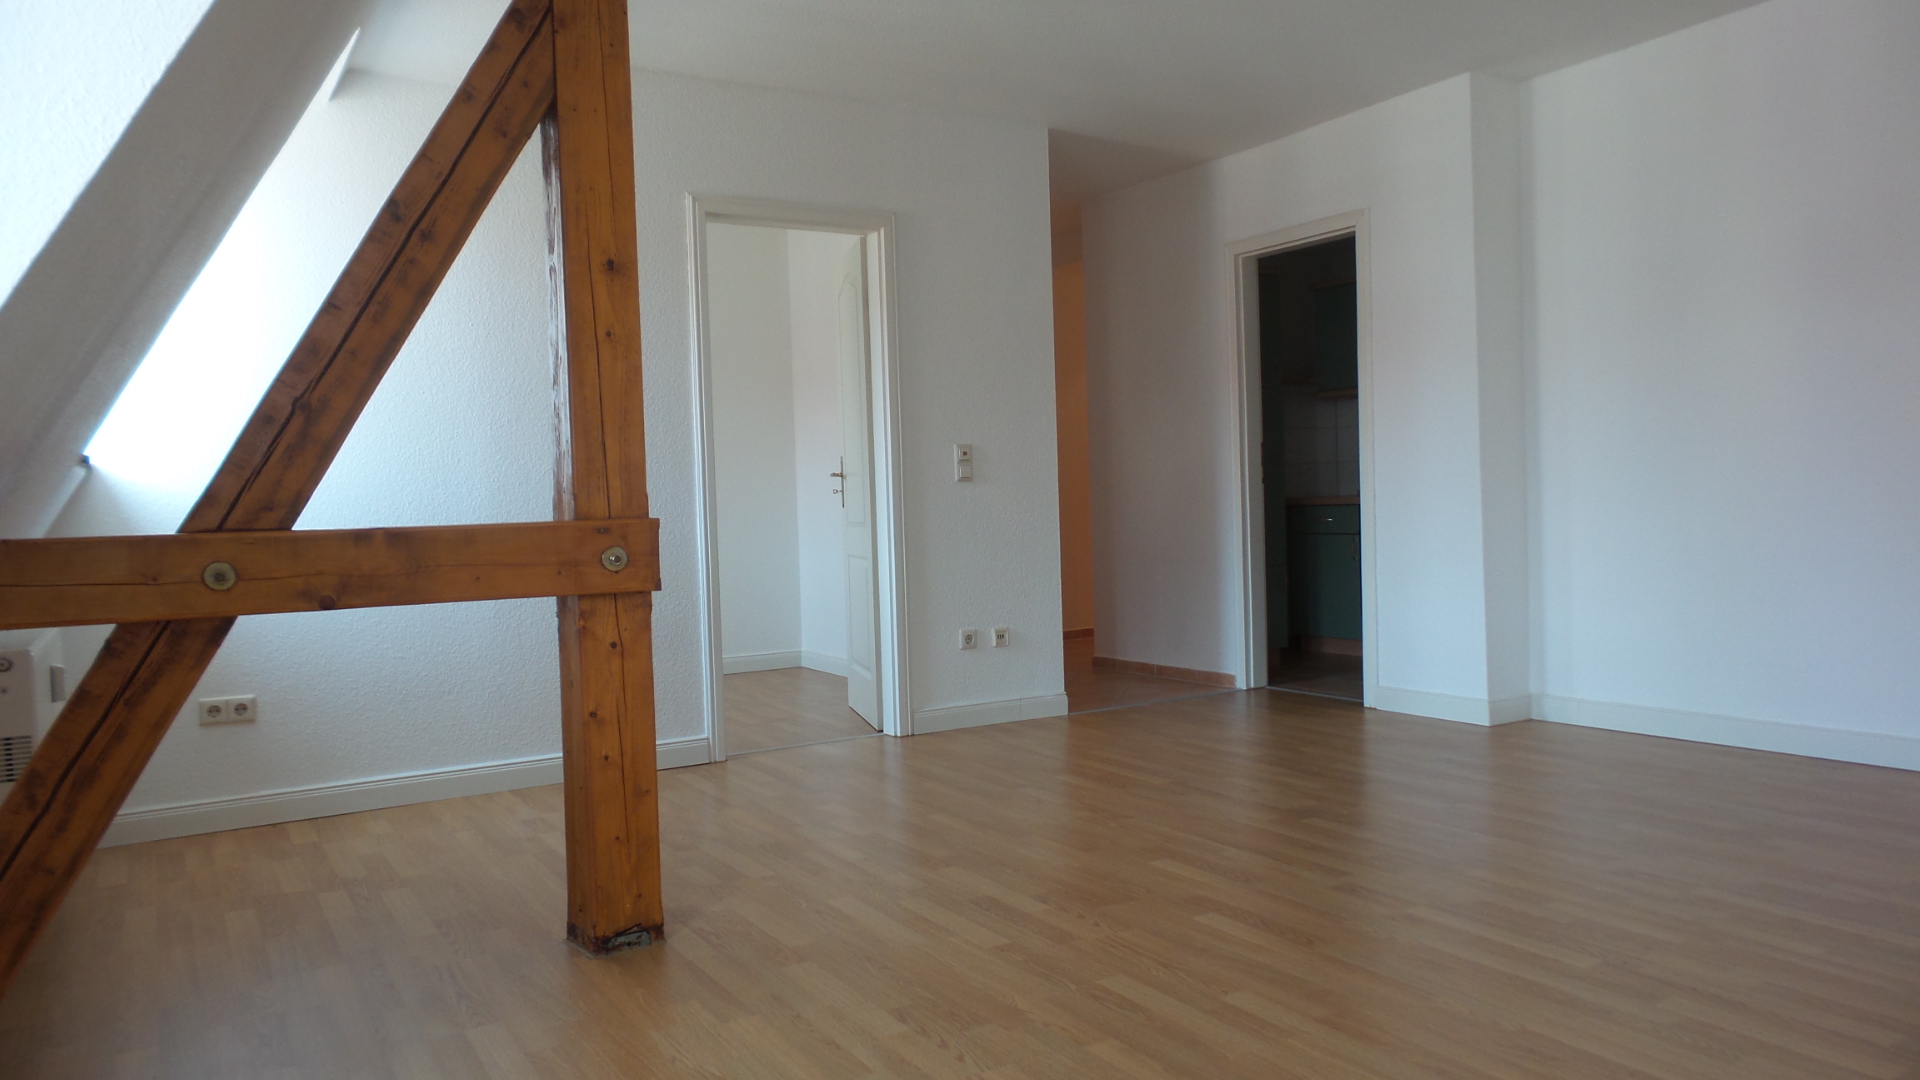 Mietwohnung: Vermietung von 1,5-Raum Dachgeschosswohnung in Görlitz, Lutherstraße 21